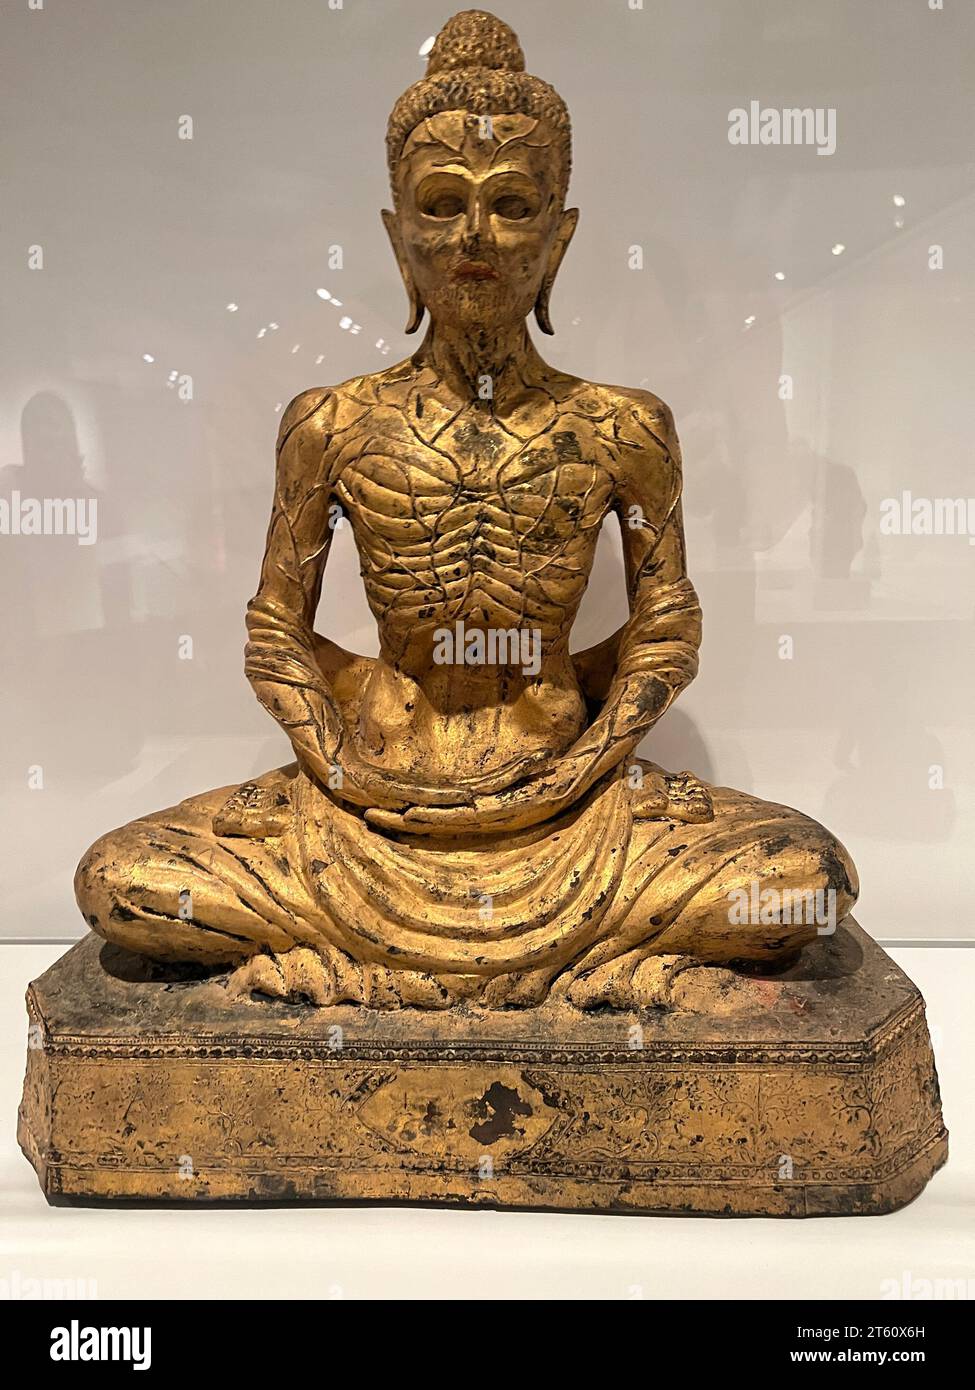 Siddhartha émacié, Thaïlande, fin 19e-début 20e siècle Bronze, laque, dorure. Le sujet de l'ascétique Siddhartha est devenu populaire en Thaïlande à la fin du XIXe siècle, probablement inspiré par des photographies d'anciennes sculptures du même sujet qui avaient été trouvées au Pakistan. Banque D'Images